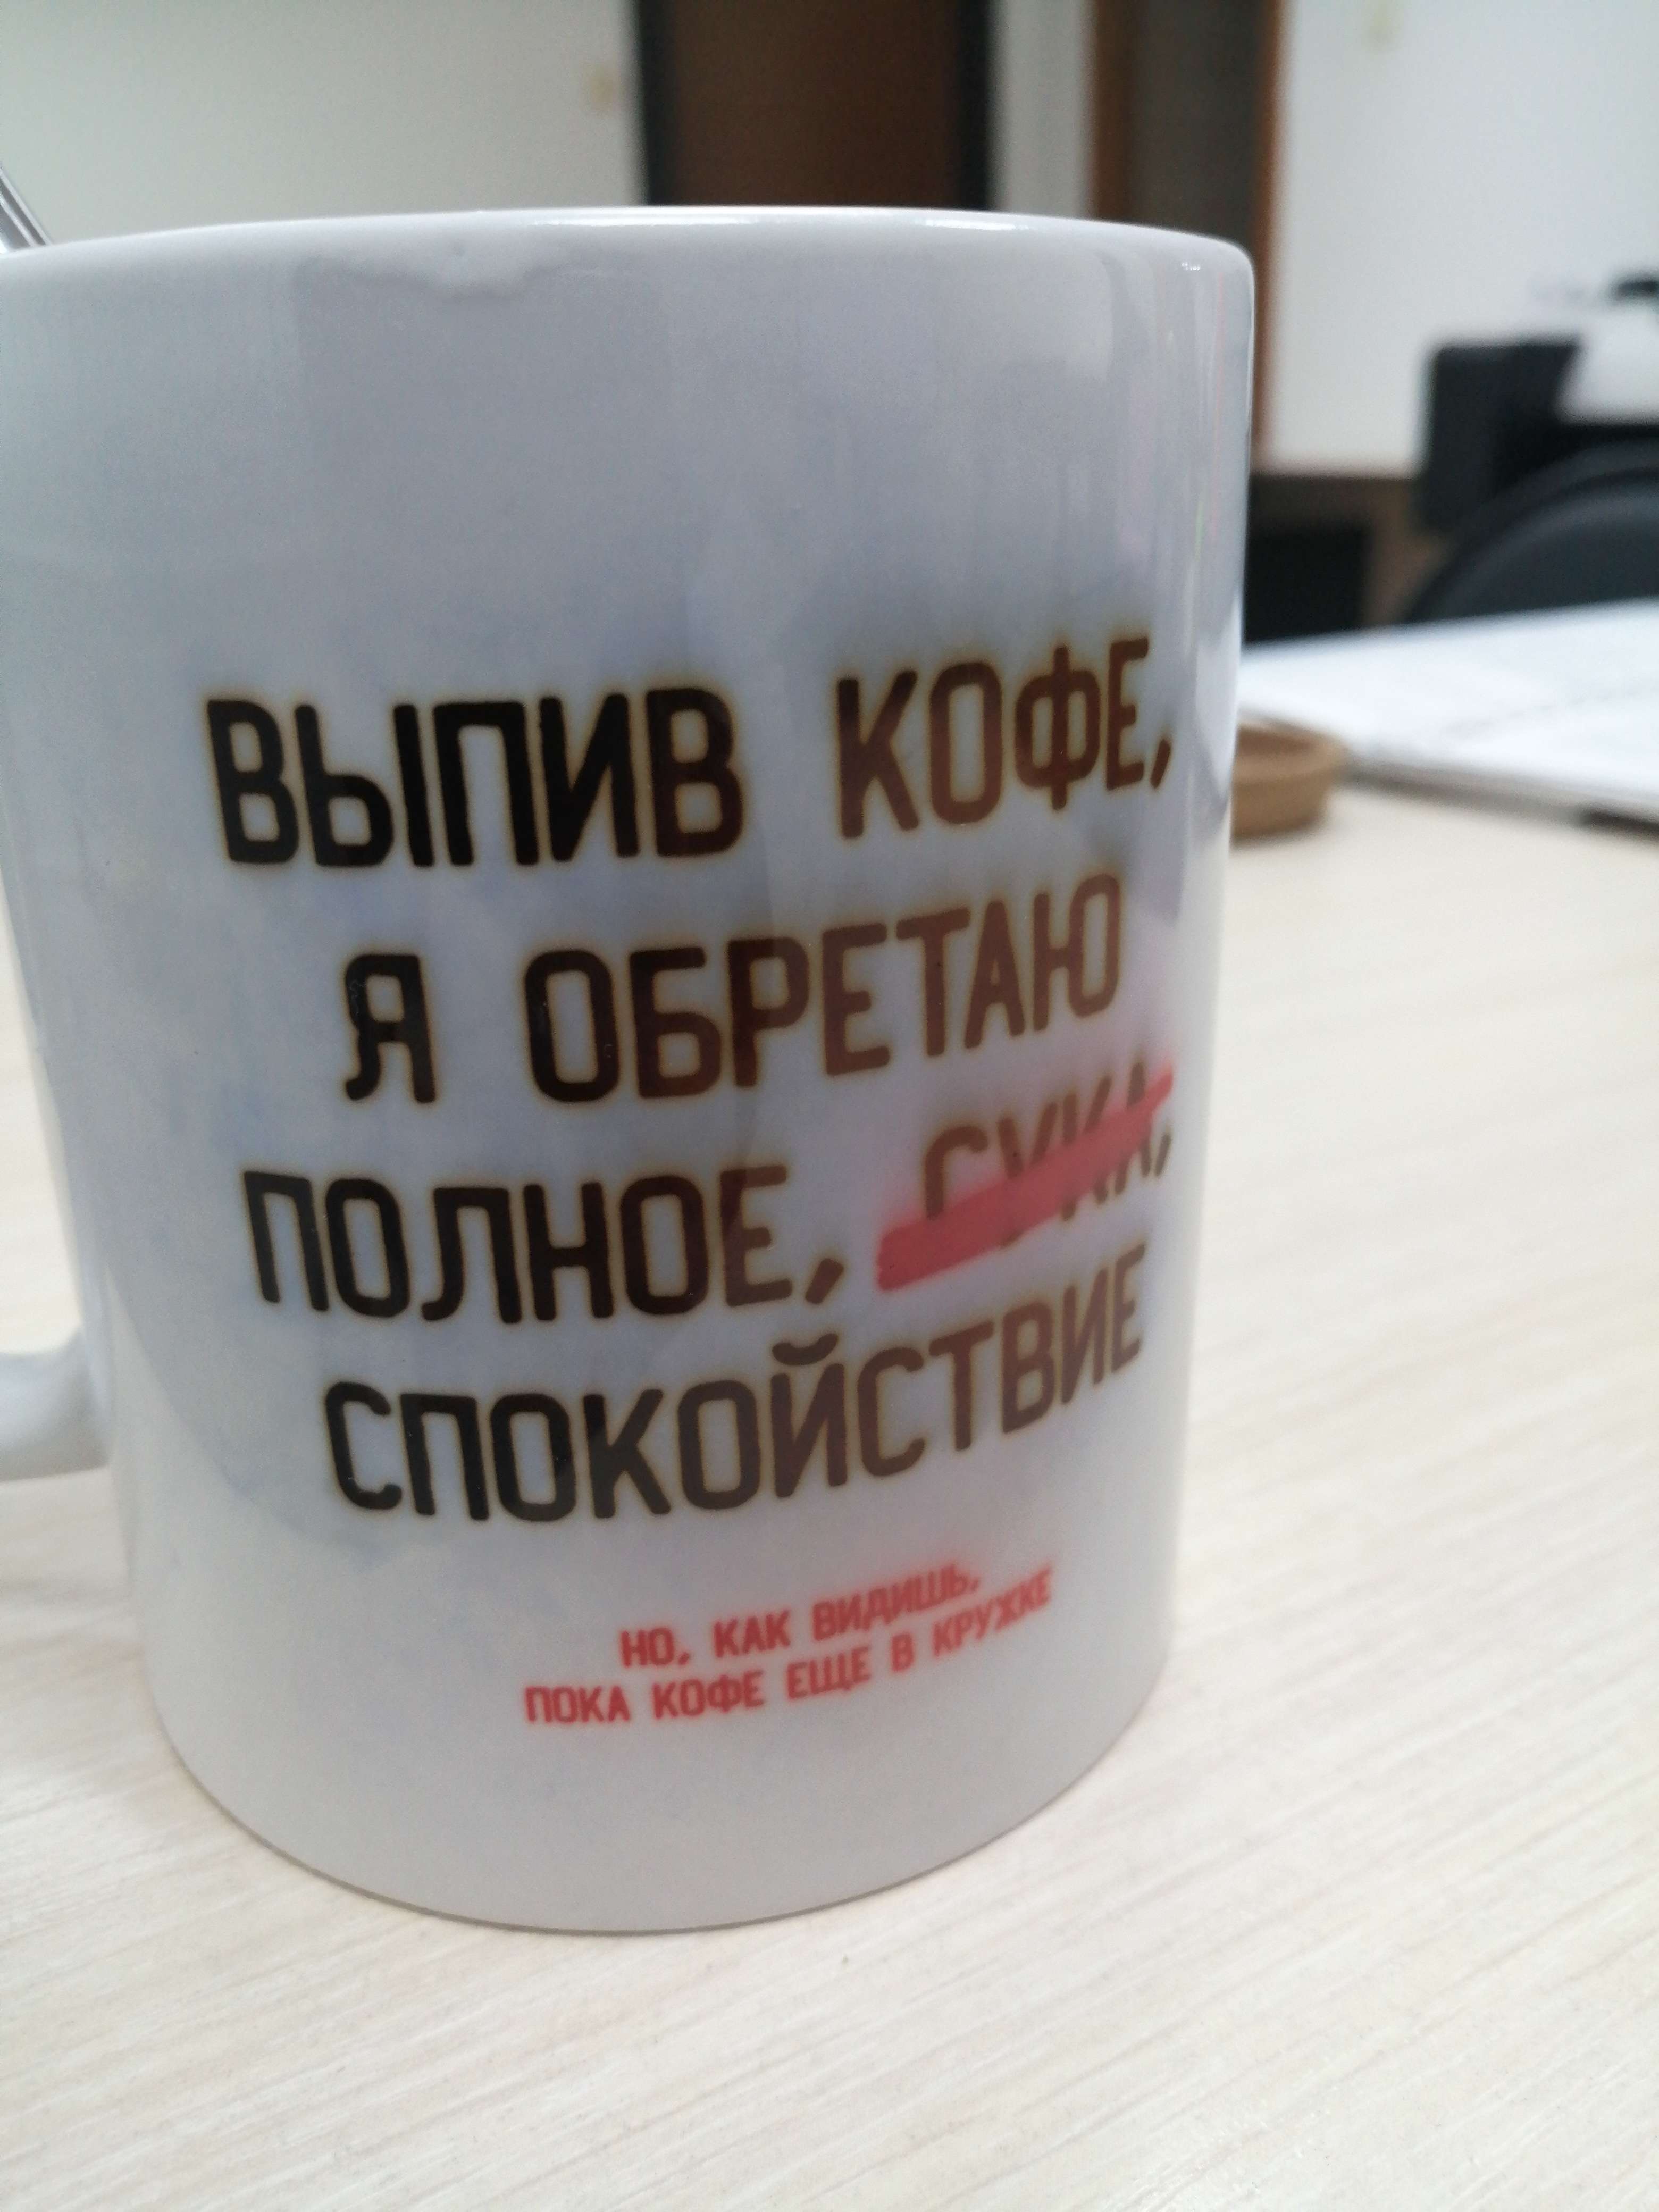 Фотография покупателя товара Кружка «Выпив кофе, я обретаю», 300 мл